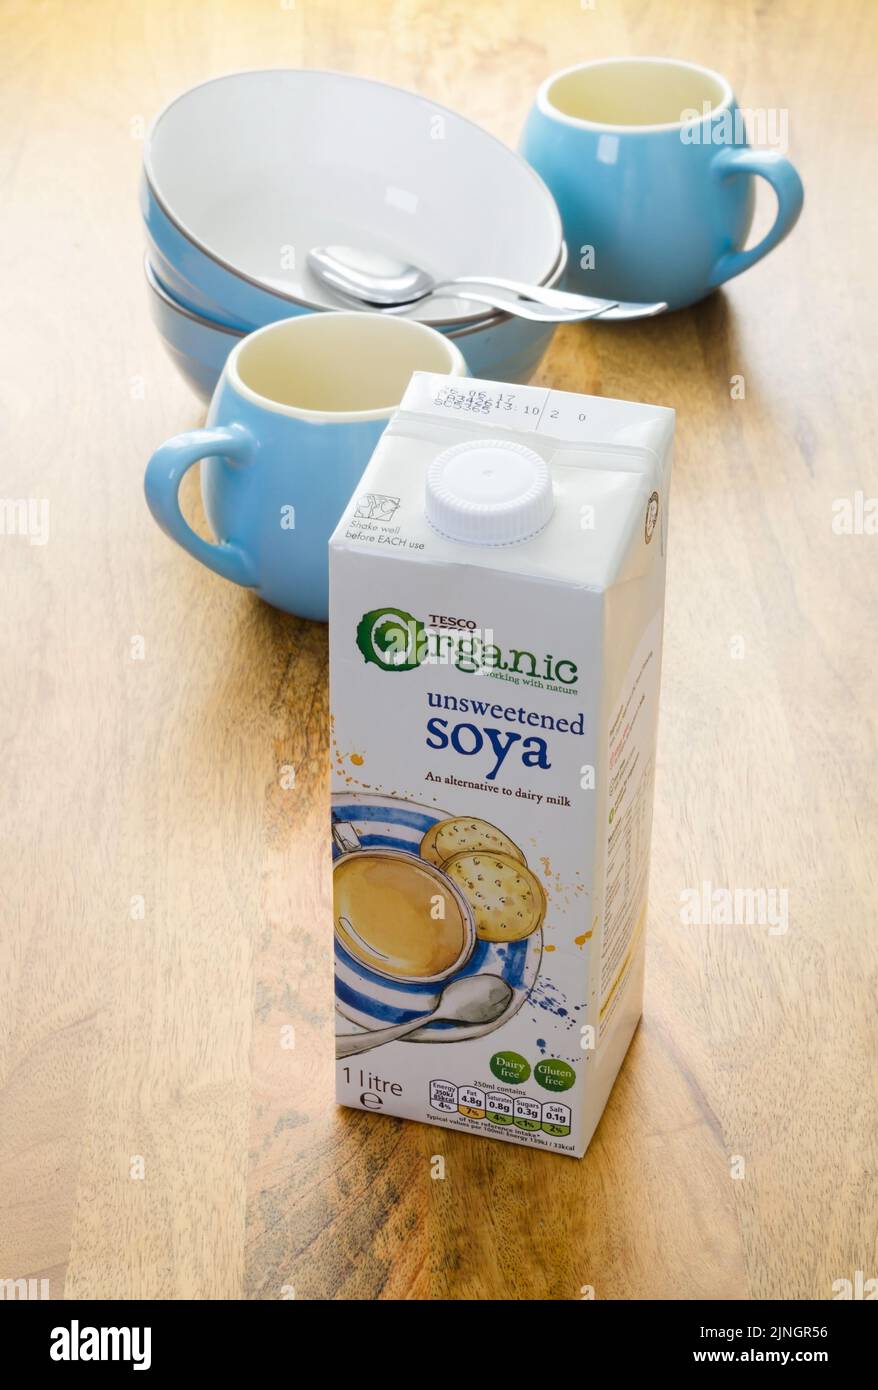 Scatola di latte di soia biologico non zuccherato di marca Tesco. Il latte di soia è un alterno senza glutine e latticini Foto Stock